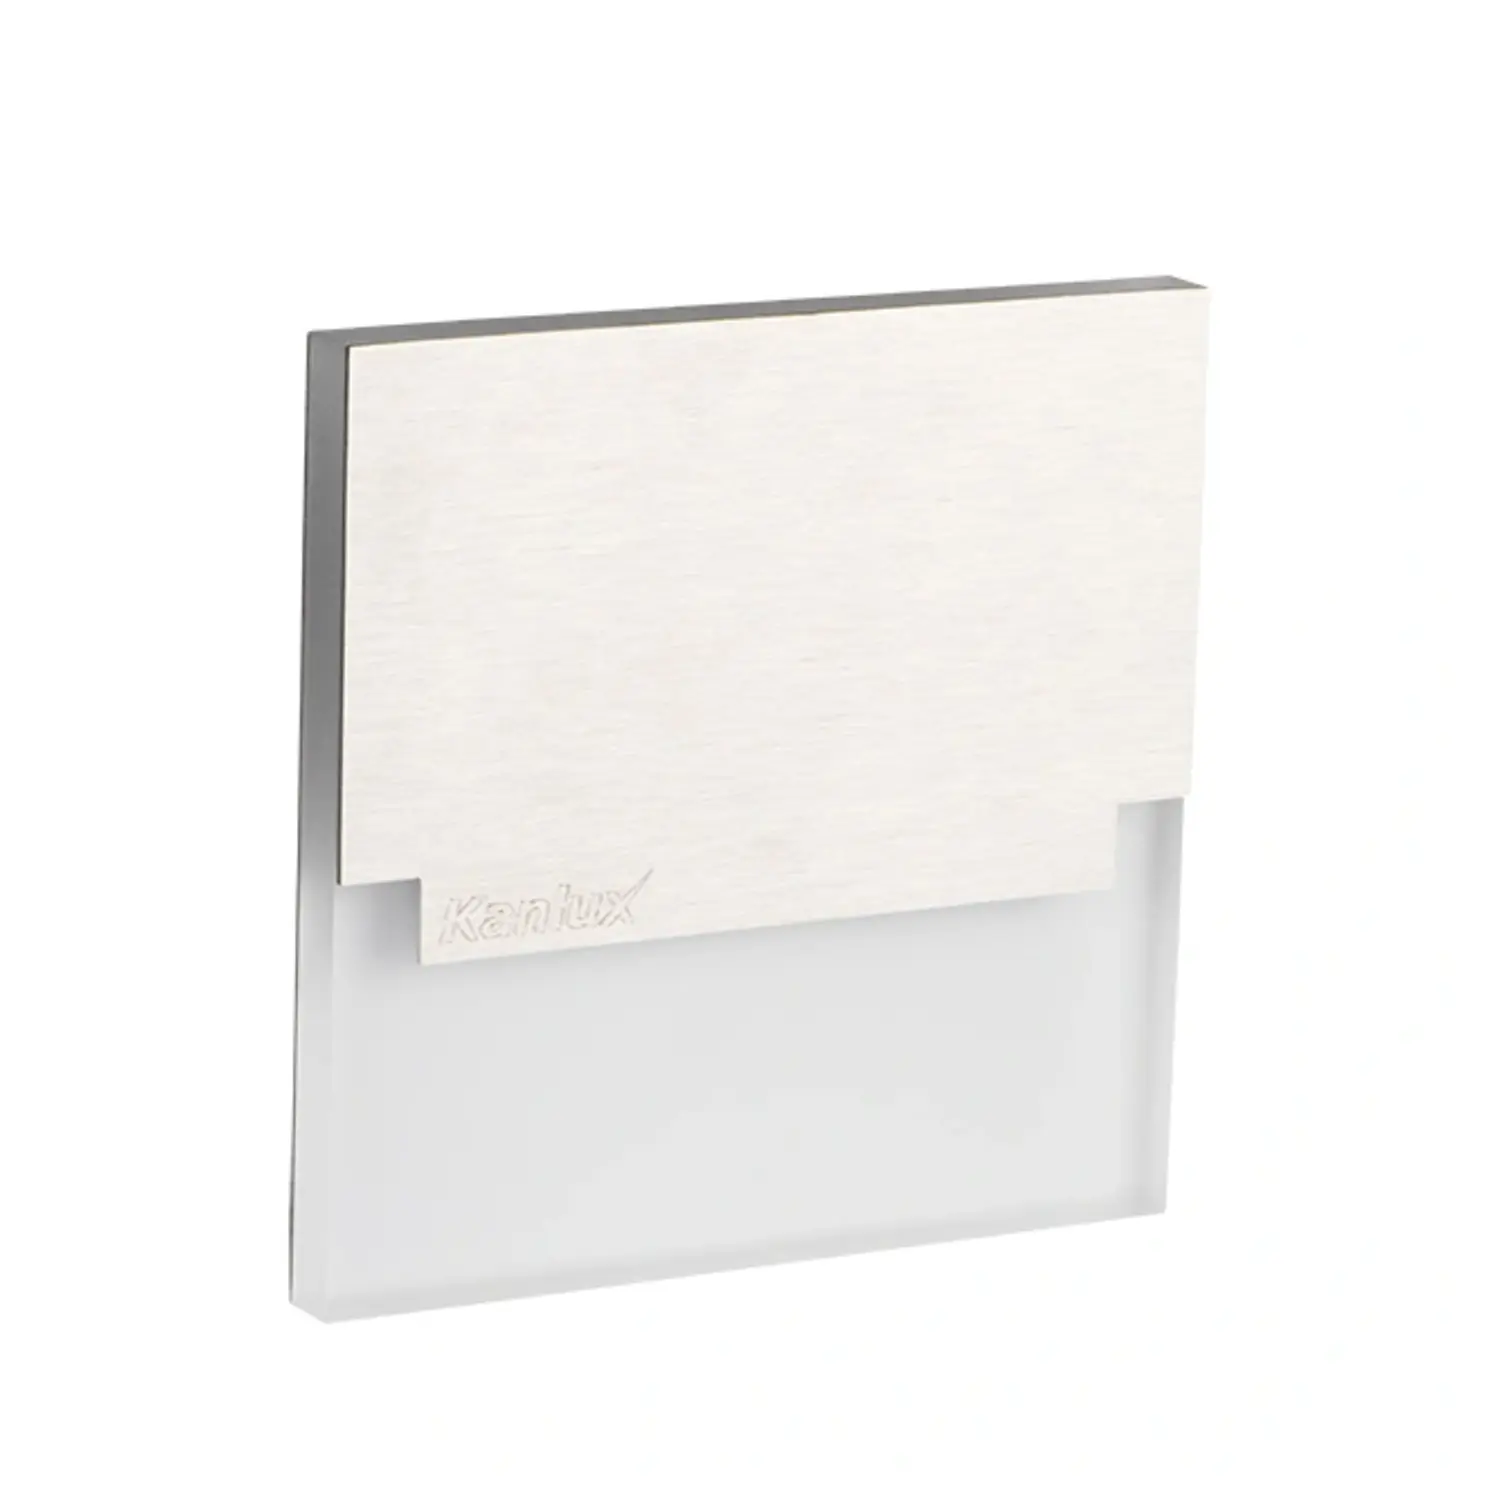 immagine del prodotto segnapasso led sabik scala 0,80 watt 12 volt bianco caldo alluminio quadrato